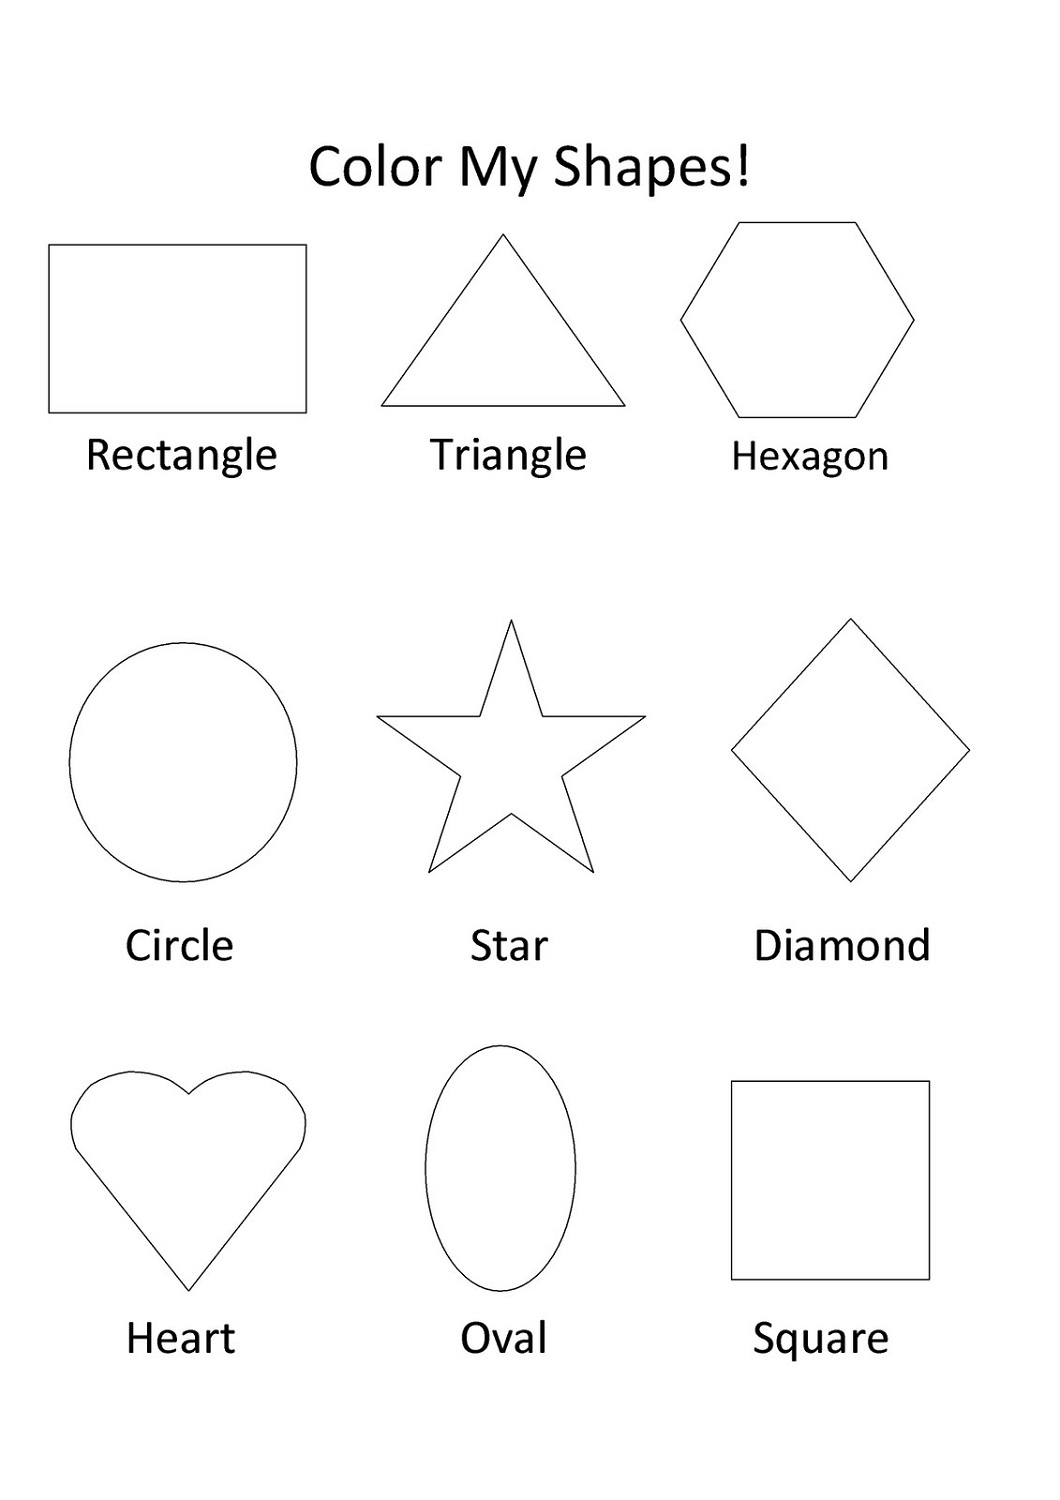 shapes-worksheets-for-kids-color